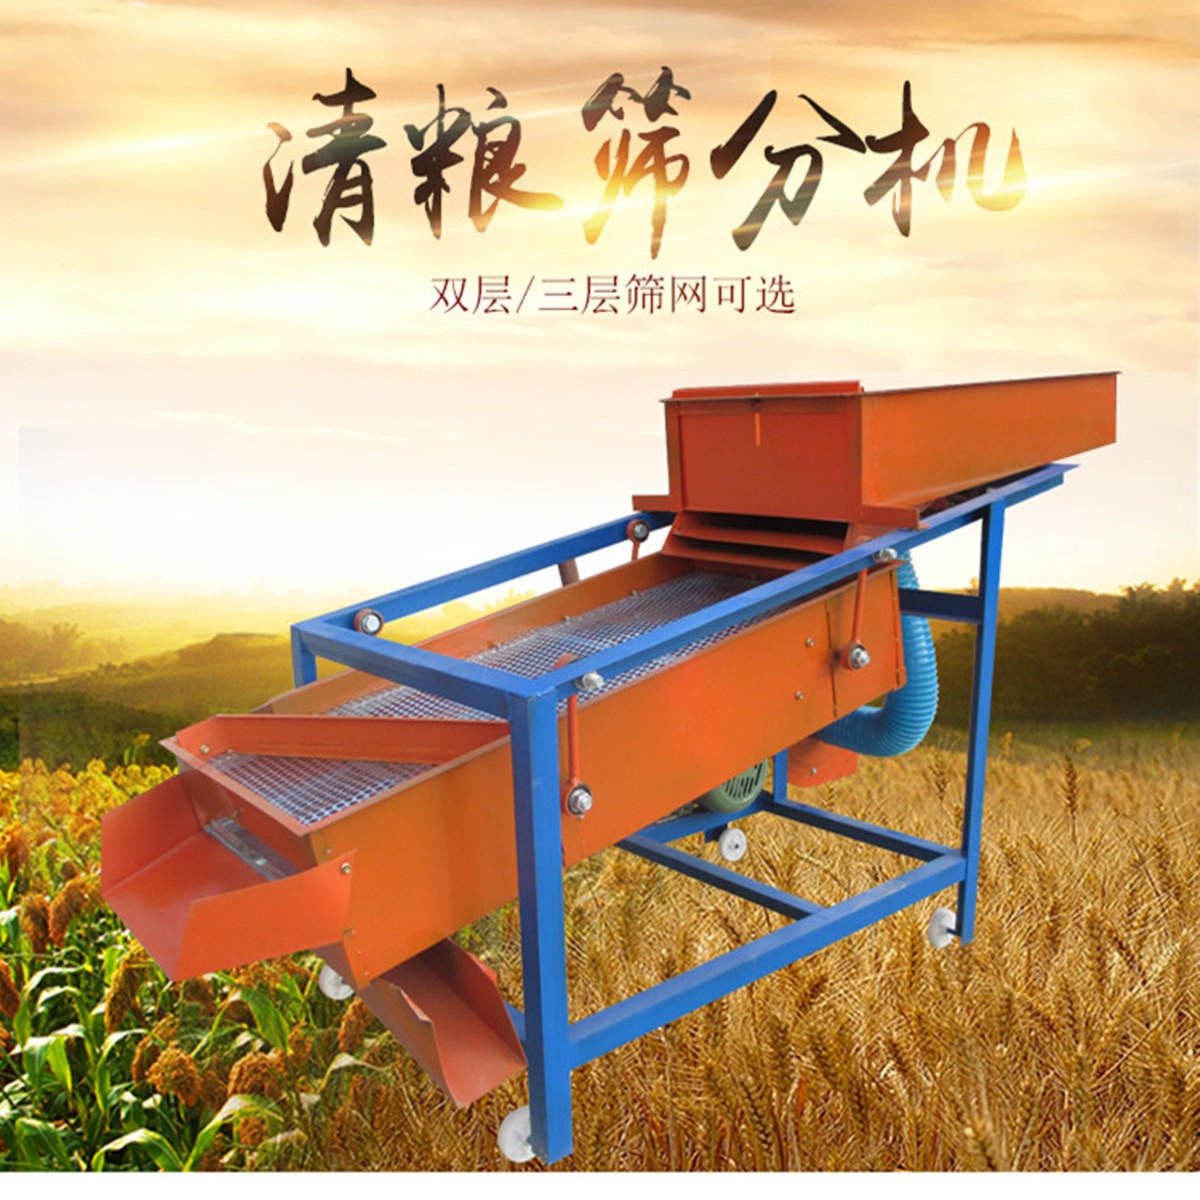 大米除杂筛 江苏米厂专用除碎米的筛选设备 中型粮食筛选机图片